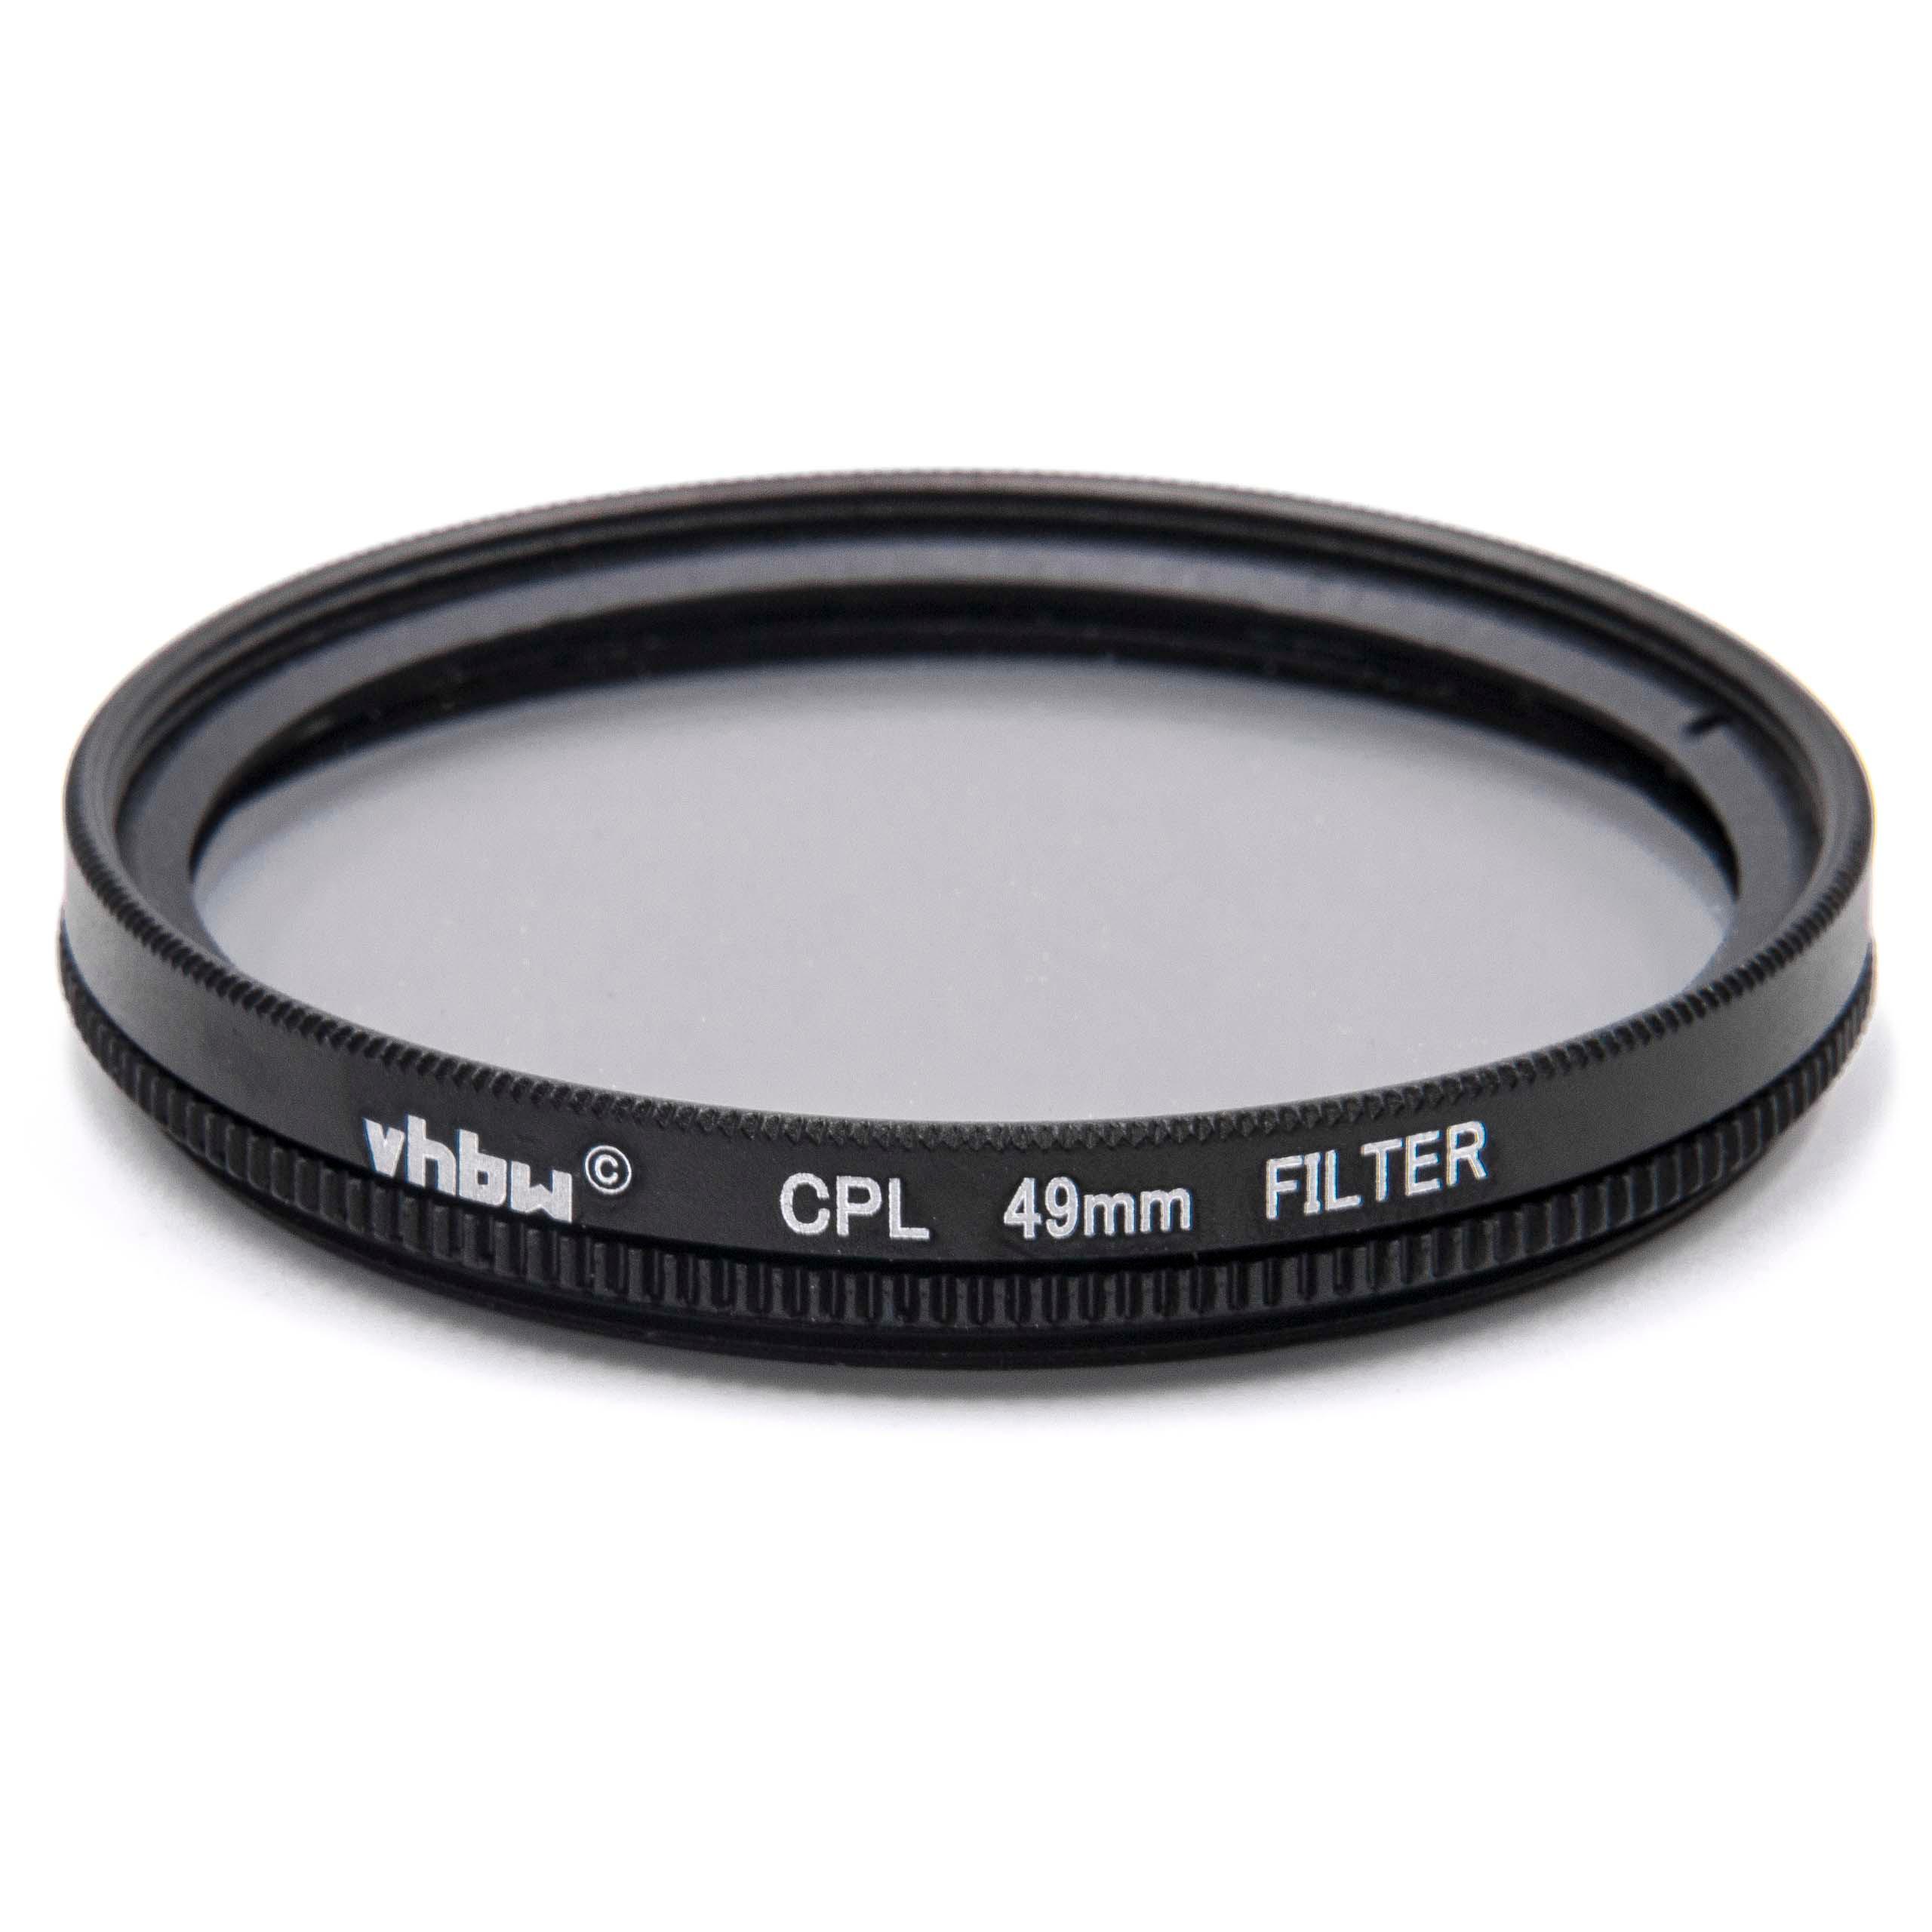 Filtre polarisant pour appareil photo et objectif de diamètre 49 mm - Filtre CPL